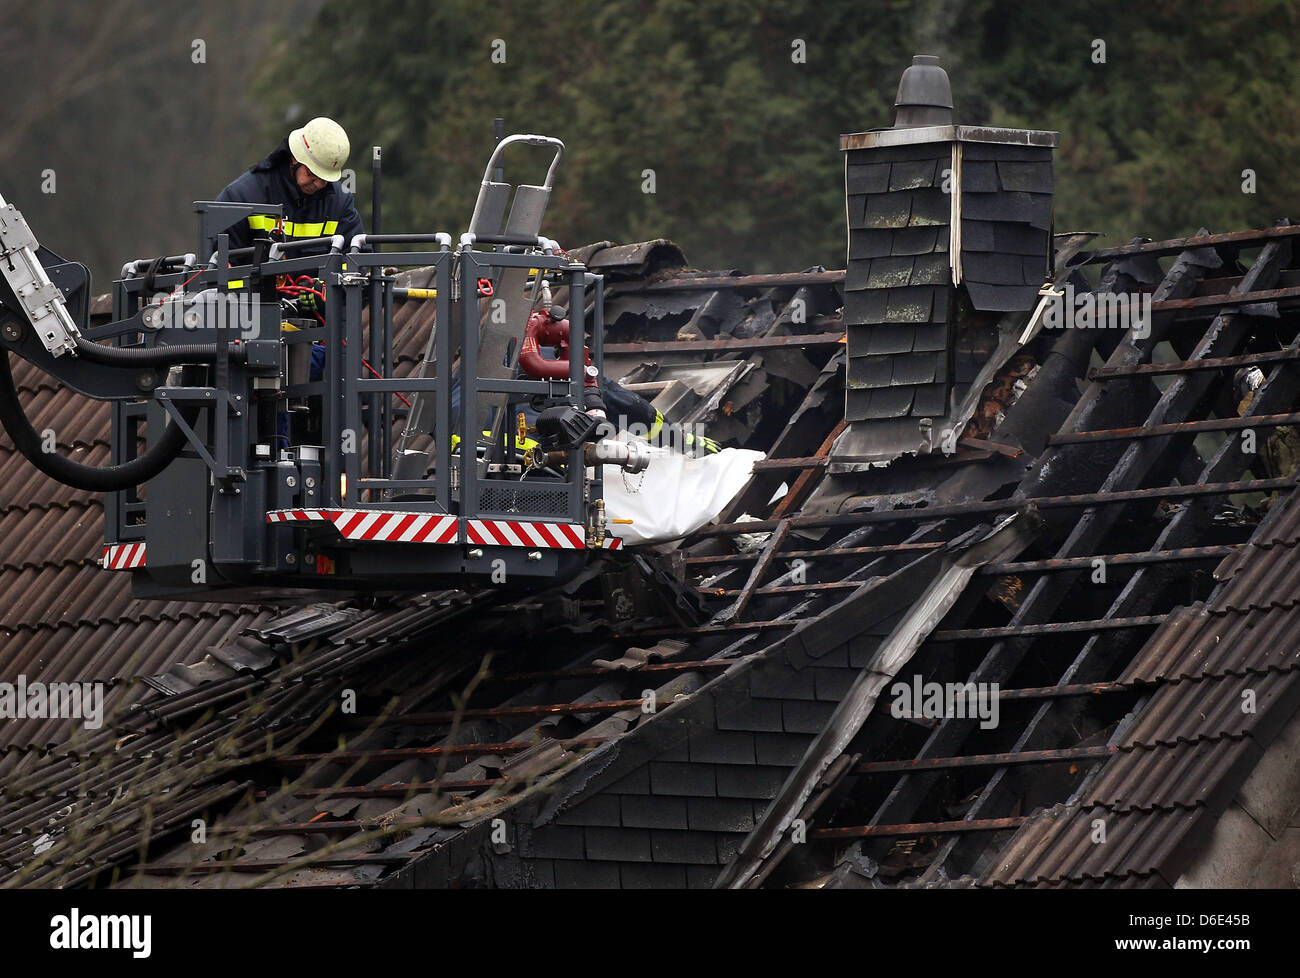 Feuerwehrleute abrufen die Leiche eines Kindes von verbrannten Dachbalken in Aachen, Deutschland, 18. Januar 2012. Bei einem Brand in einer Doppelhaushälfte starben drei Kinder. Foto: OLIVER BERG Stockfoto